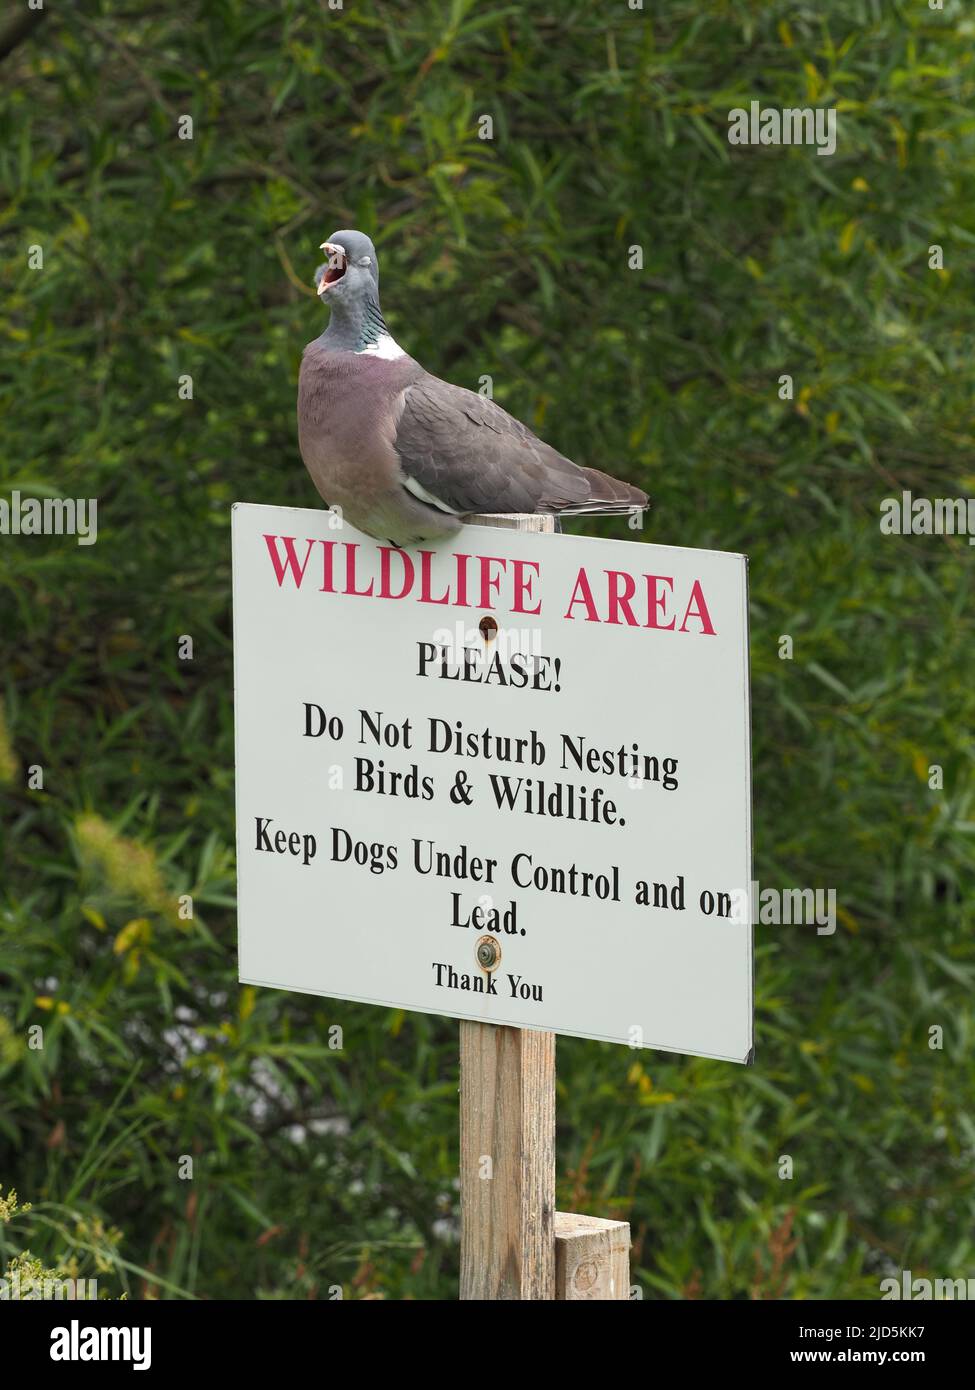 Gewöhnliche Waldtaube gähnt während sie auf einem „Do Not Disturb Wildlife“-Schild in der Nähe eines Flussufers steht. Grüne Bäume und Laub im Hintergrund. Stockfoto